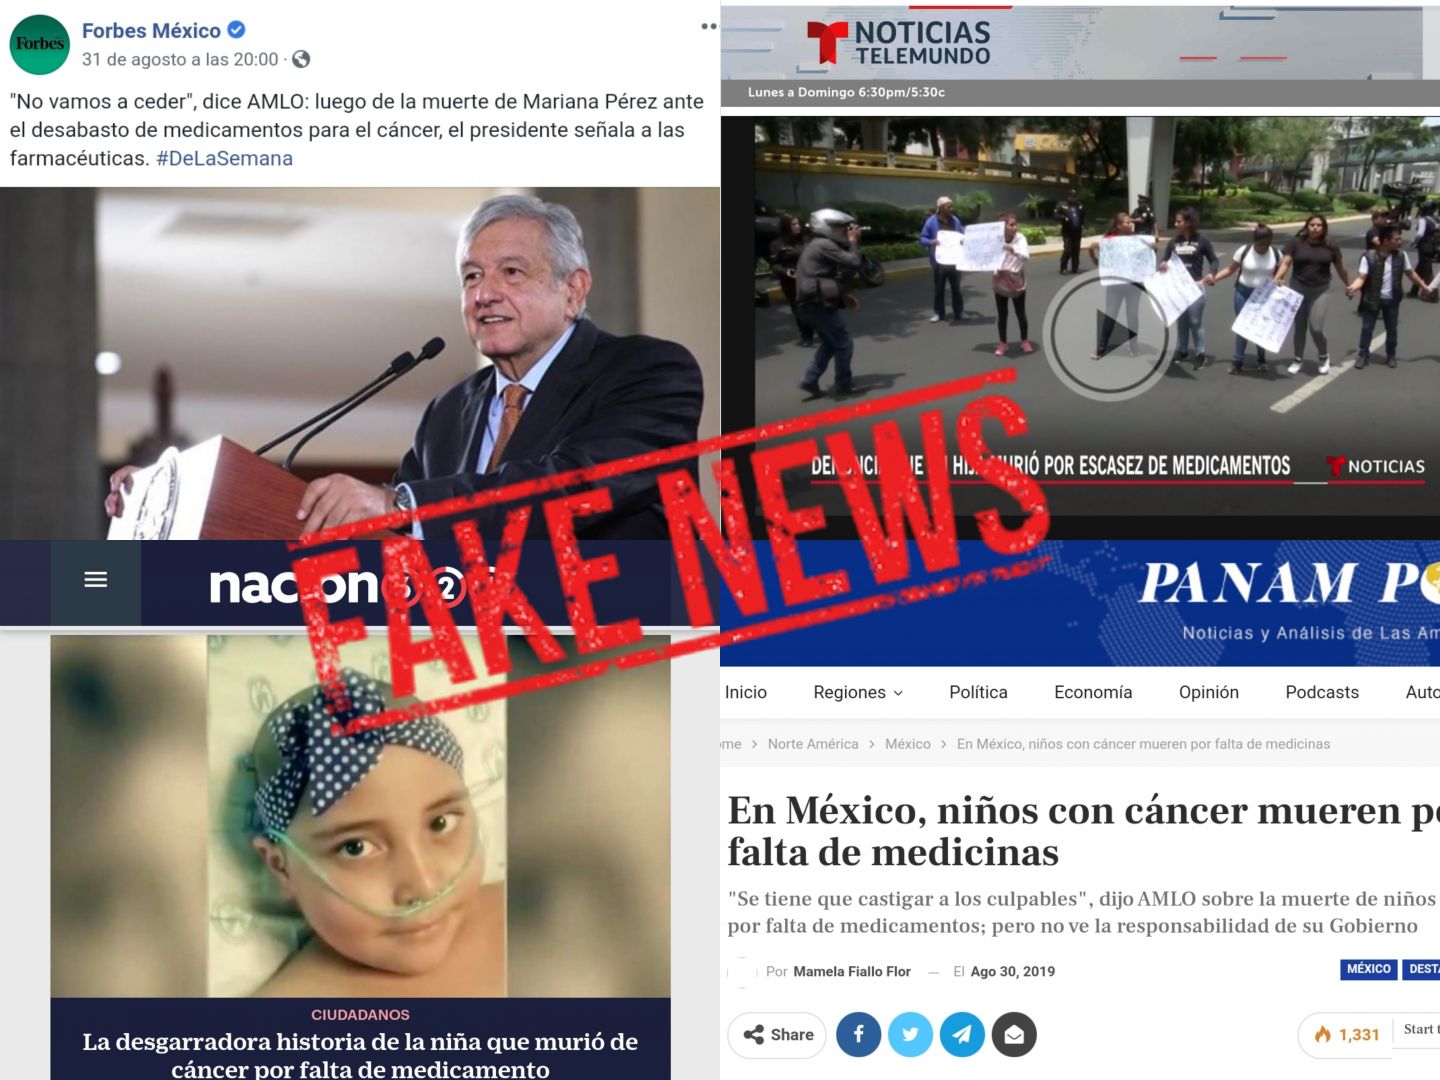 Difunden medios fake news incluso sabiendo que se trata de un engaño
